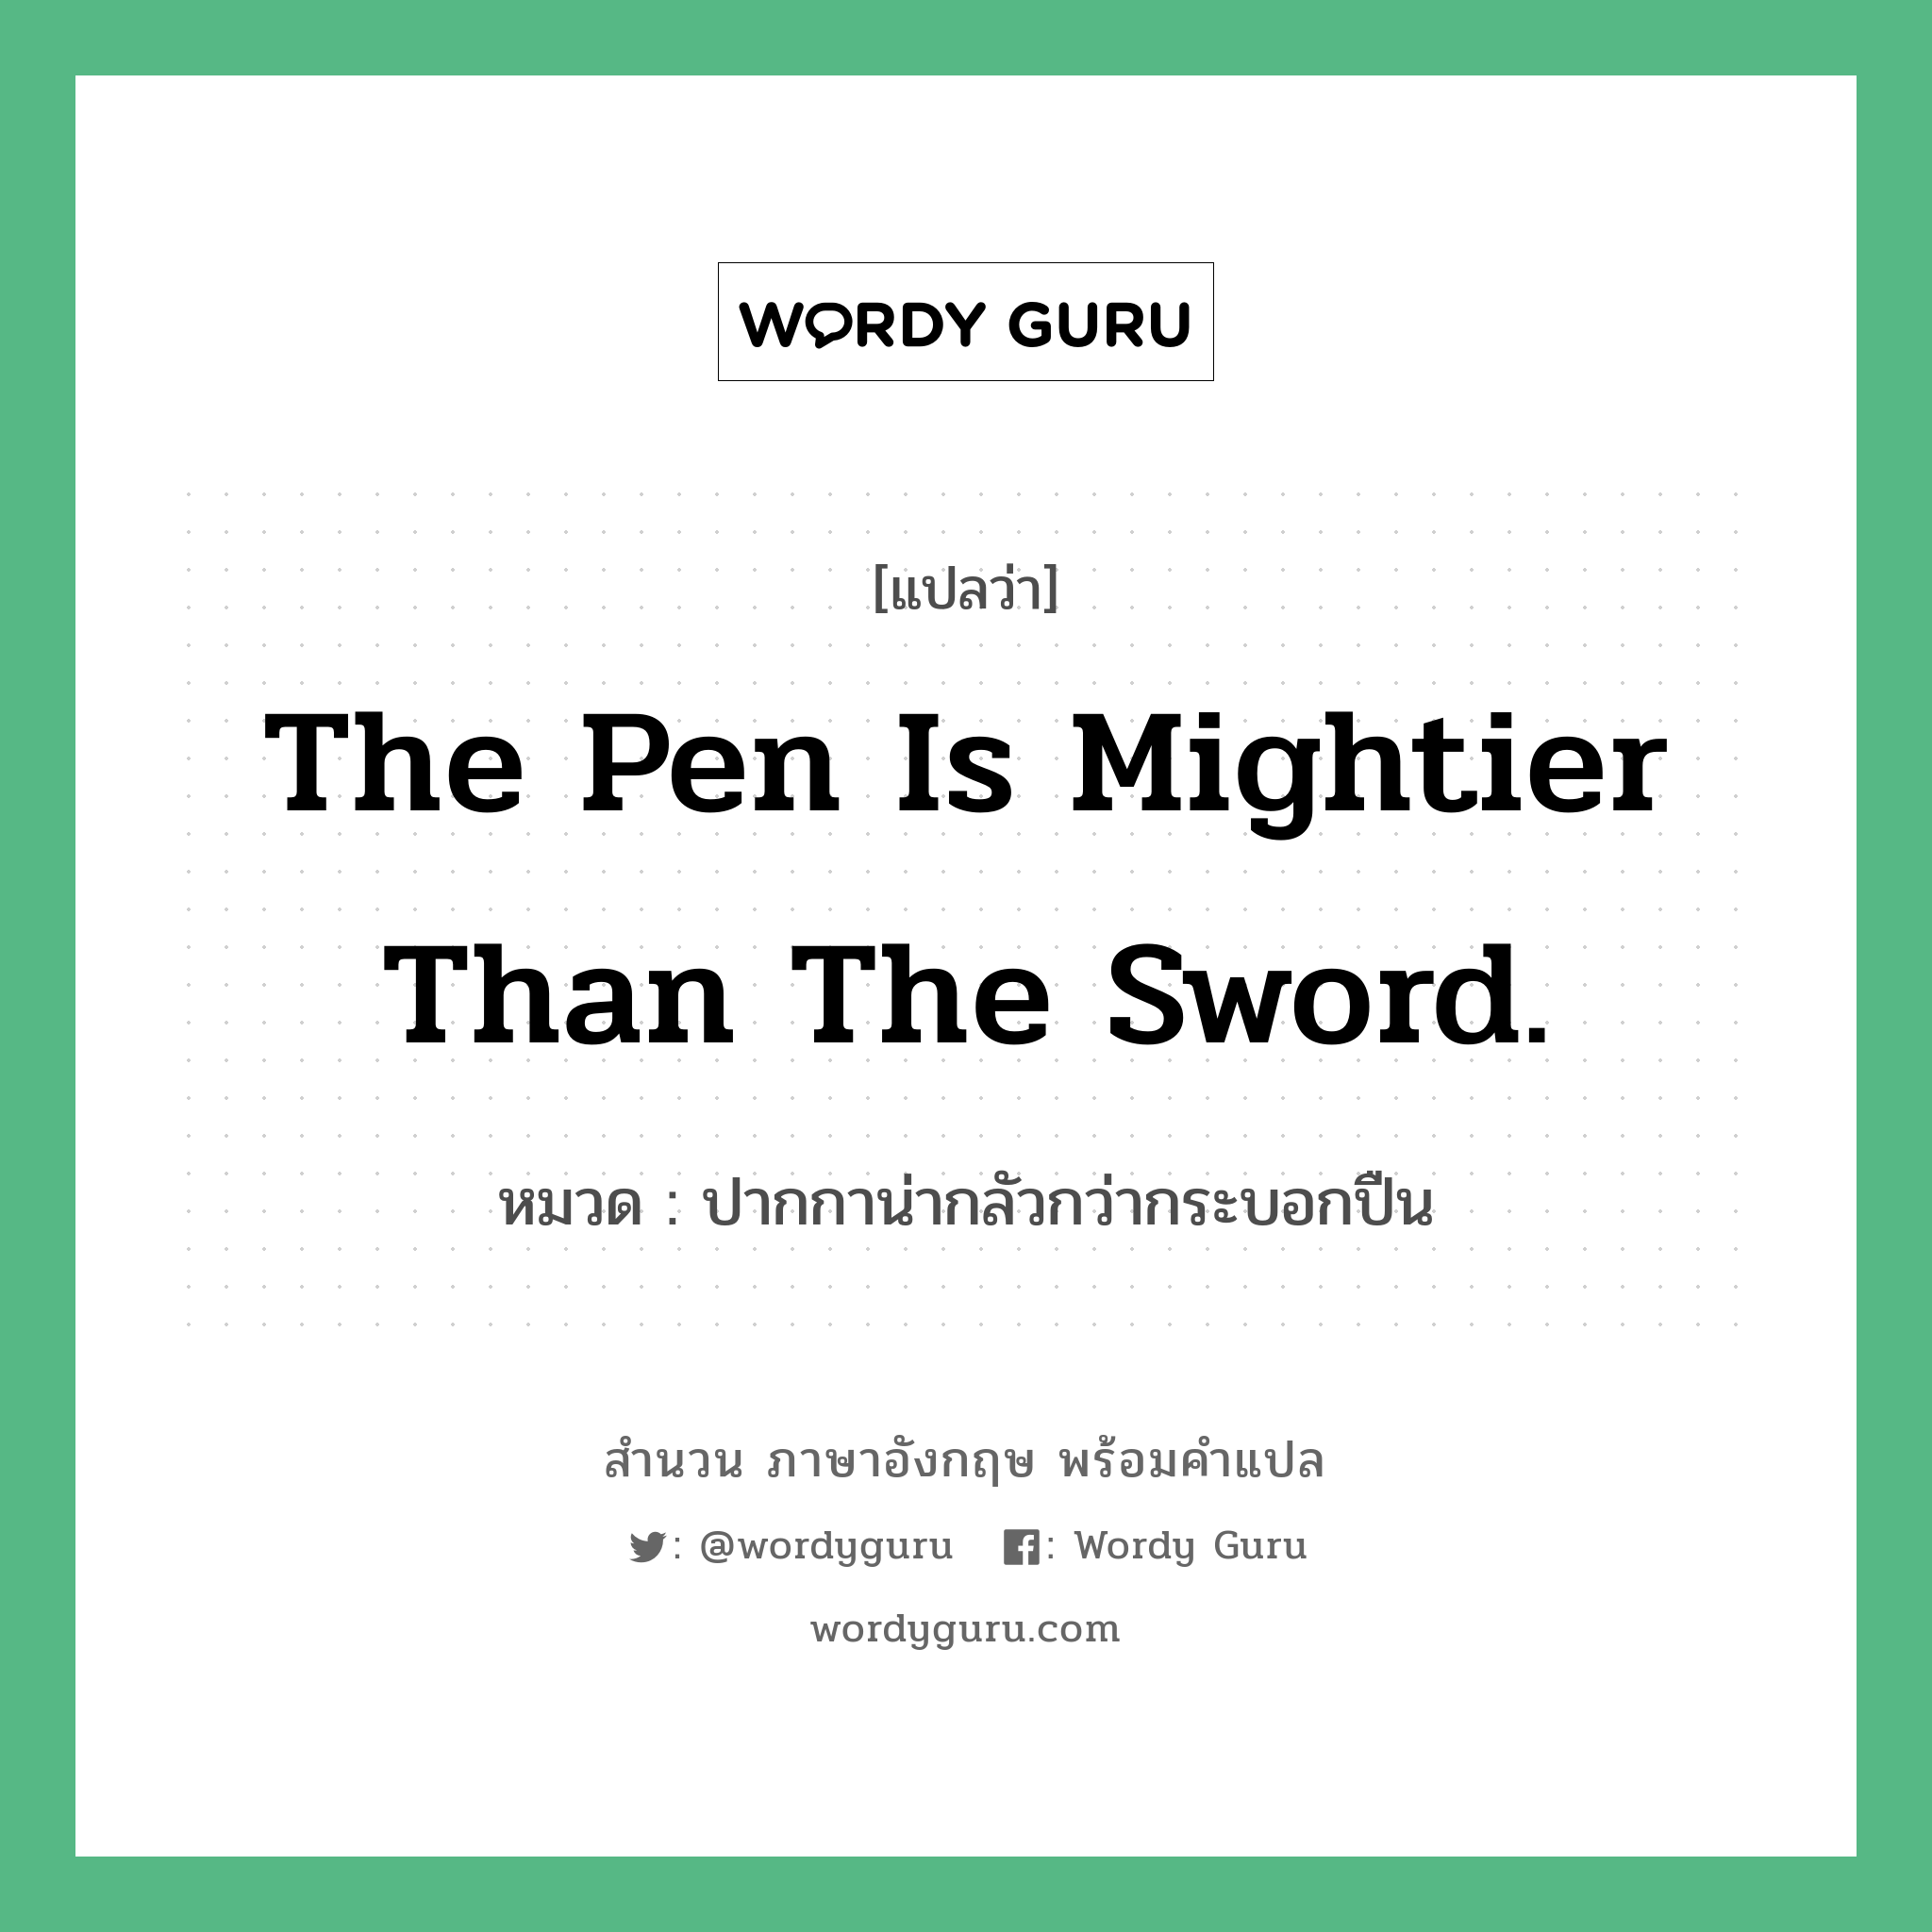 ปากกาน่ากลัวกว่ากระบอกปืน ภาษาอังกฤษ?, สำนวนภาษาอังกฤษ ปากกาน่ากลัวกว่ากระบอกปืน แปลว่า ปากกาน่ากลัวกว่ากระบอกปืน หมวด The pen is mightier than the sword. คำสุภาษิต ภาษาอังกฤษ หมวด คำสุภาษิต ภาษาอังกฤษ